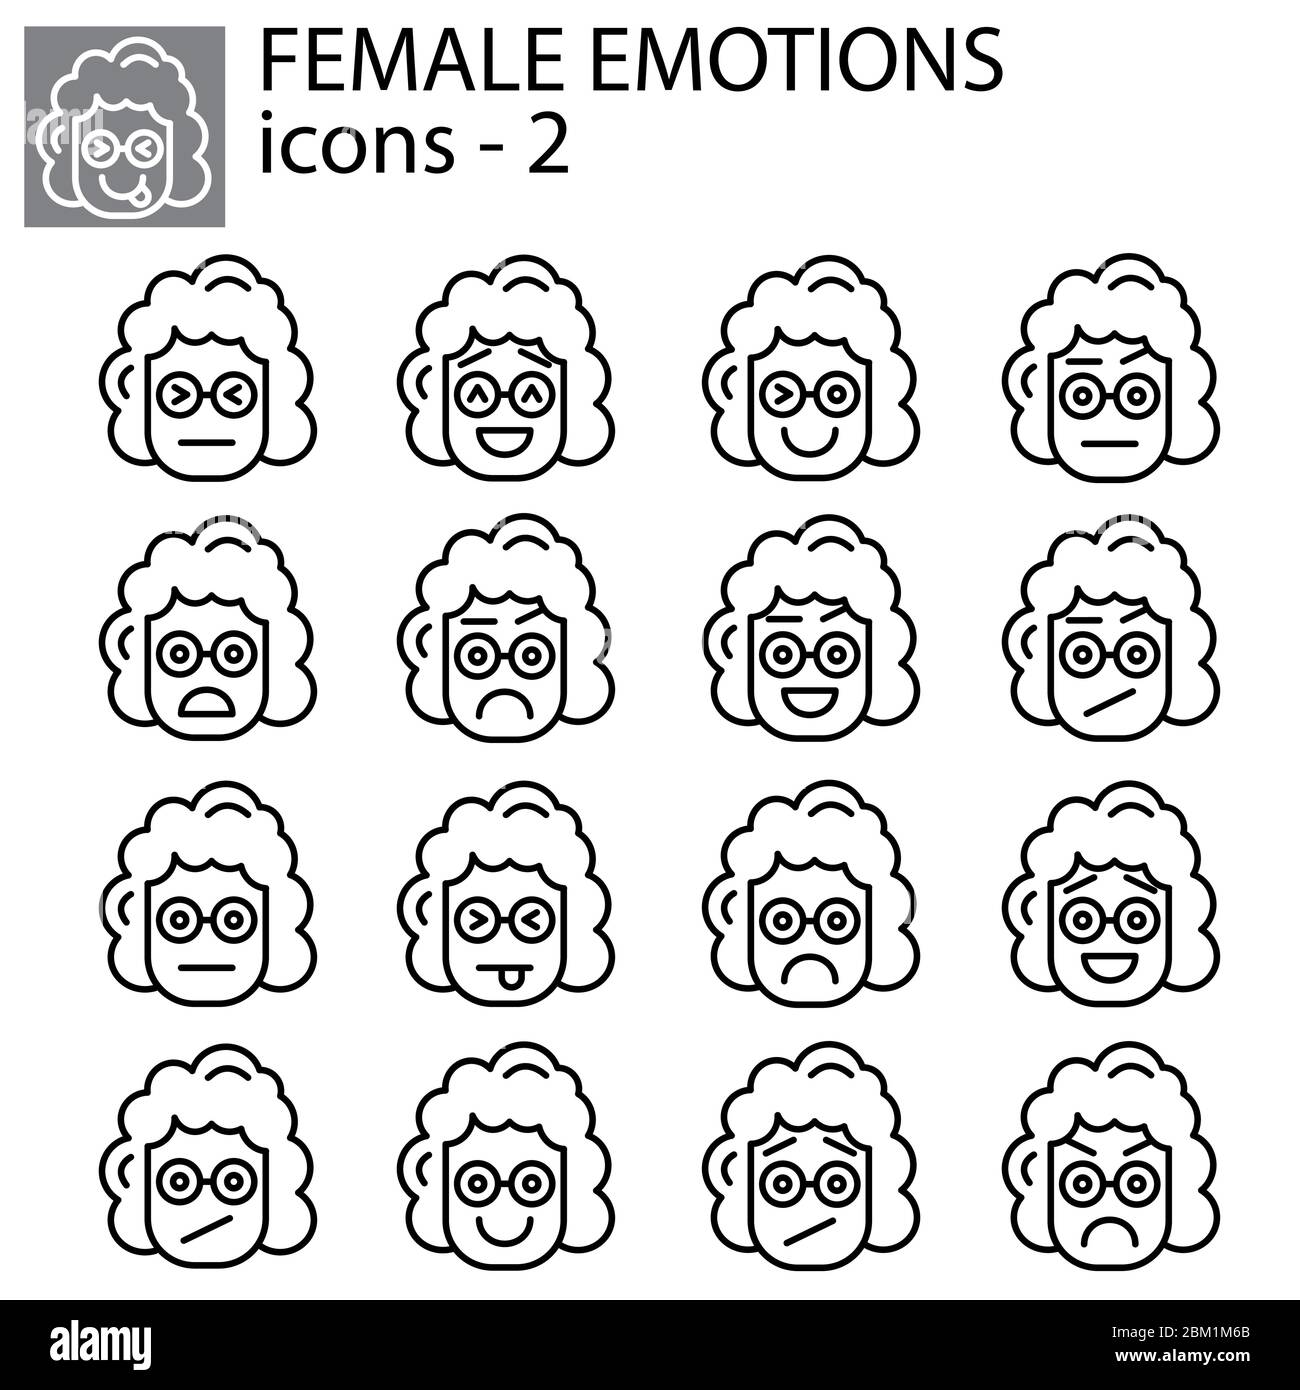 Jeu d'icônes vectorielles créatives - Emoticons femme. Ensemble d'icônes de fille smiley: Différentes émotions. Icônes vectorielles de smiley visages Illustration de Vecteur